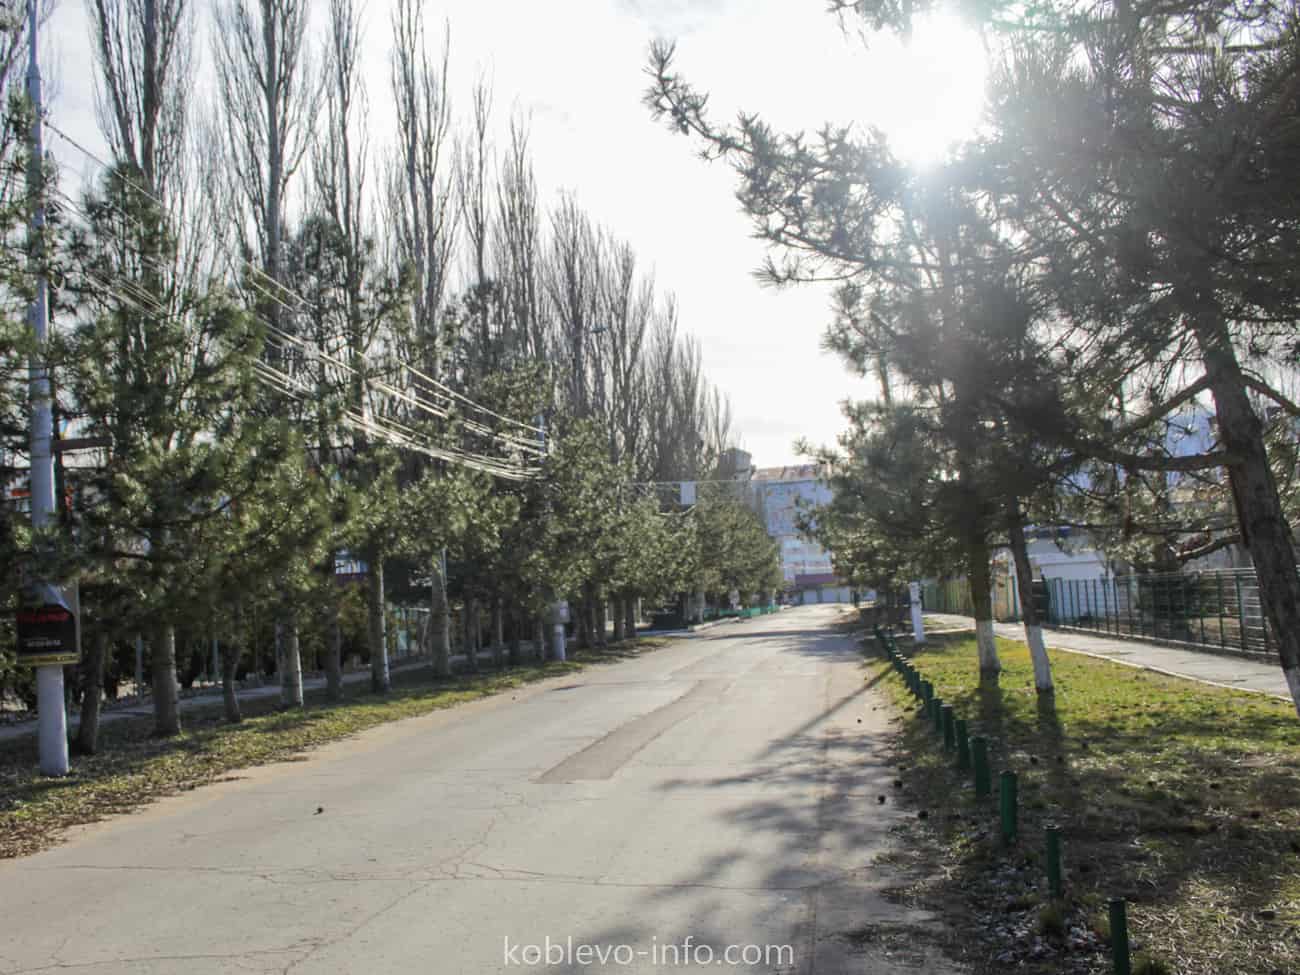 Тихие улицы курорта Коблево зимой 2022